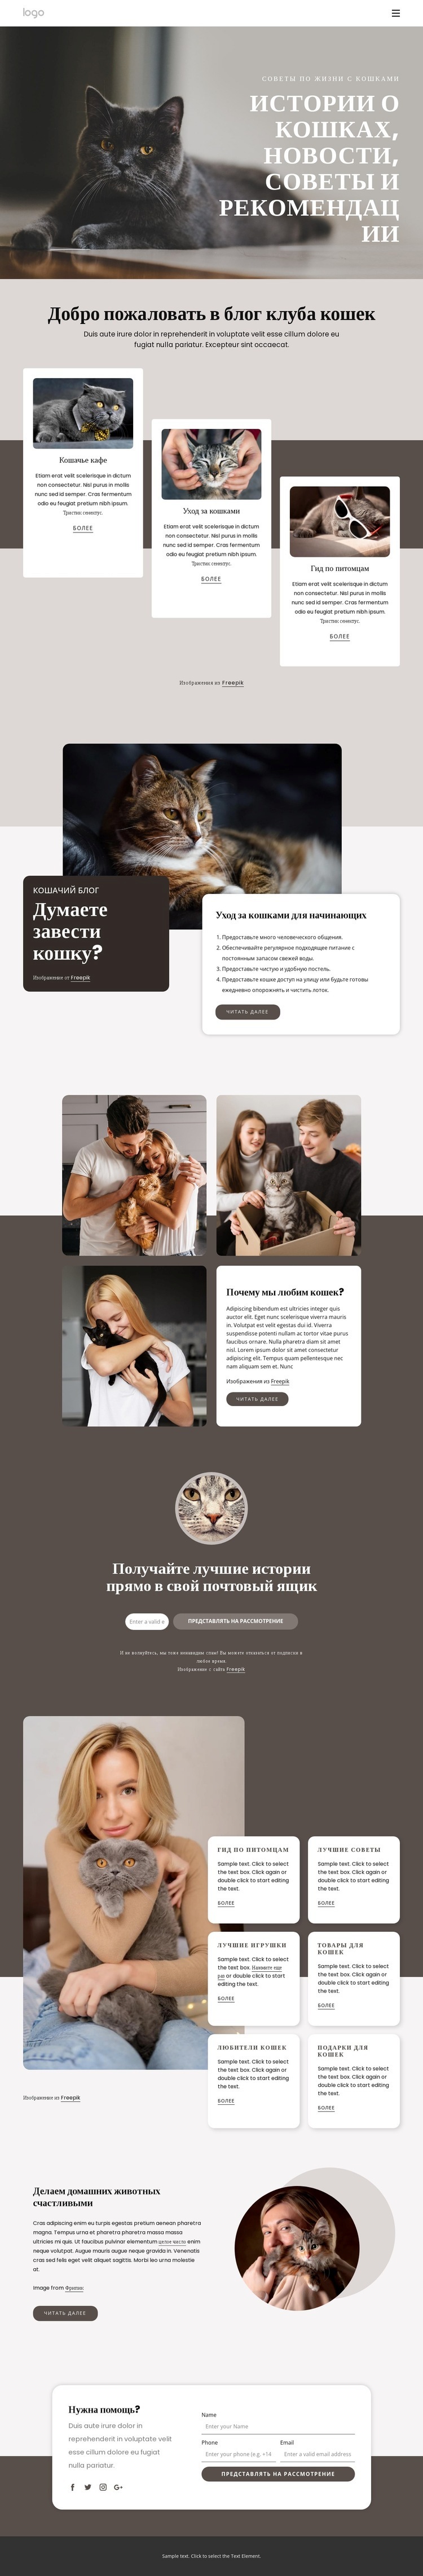 Истории о кошках, советы и рекомендации Мокап веб-сайта